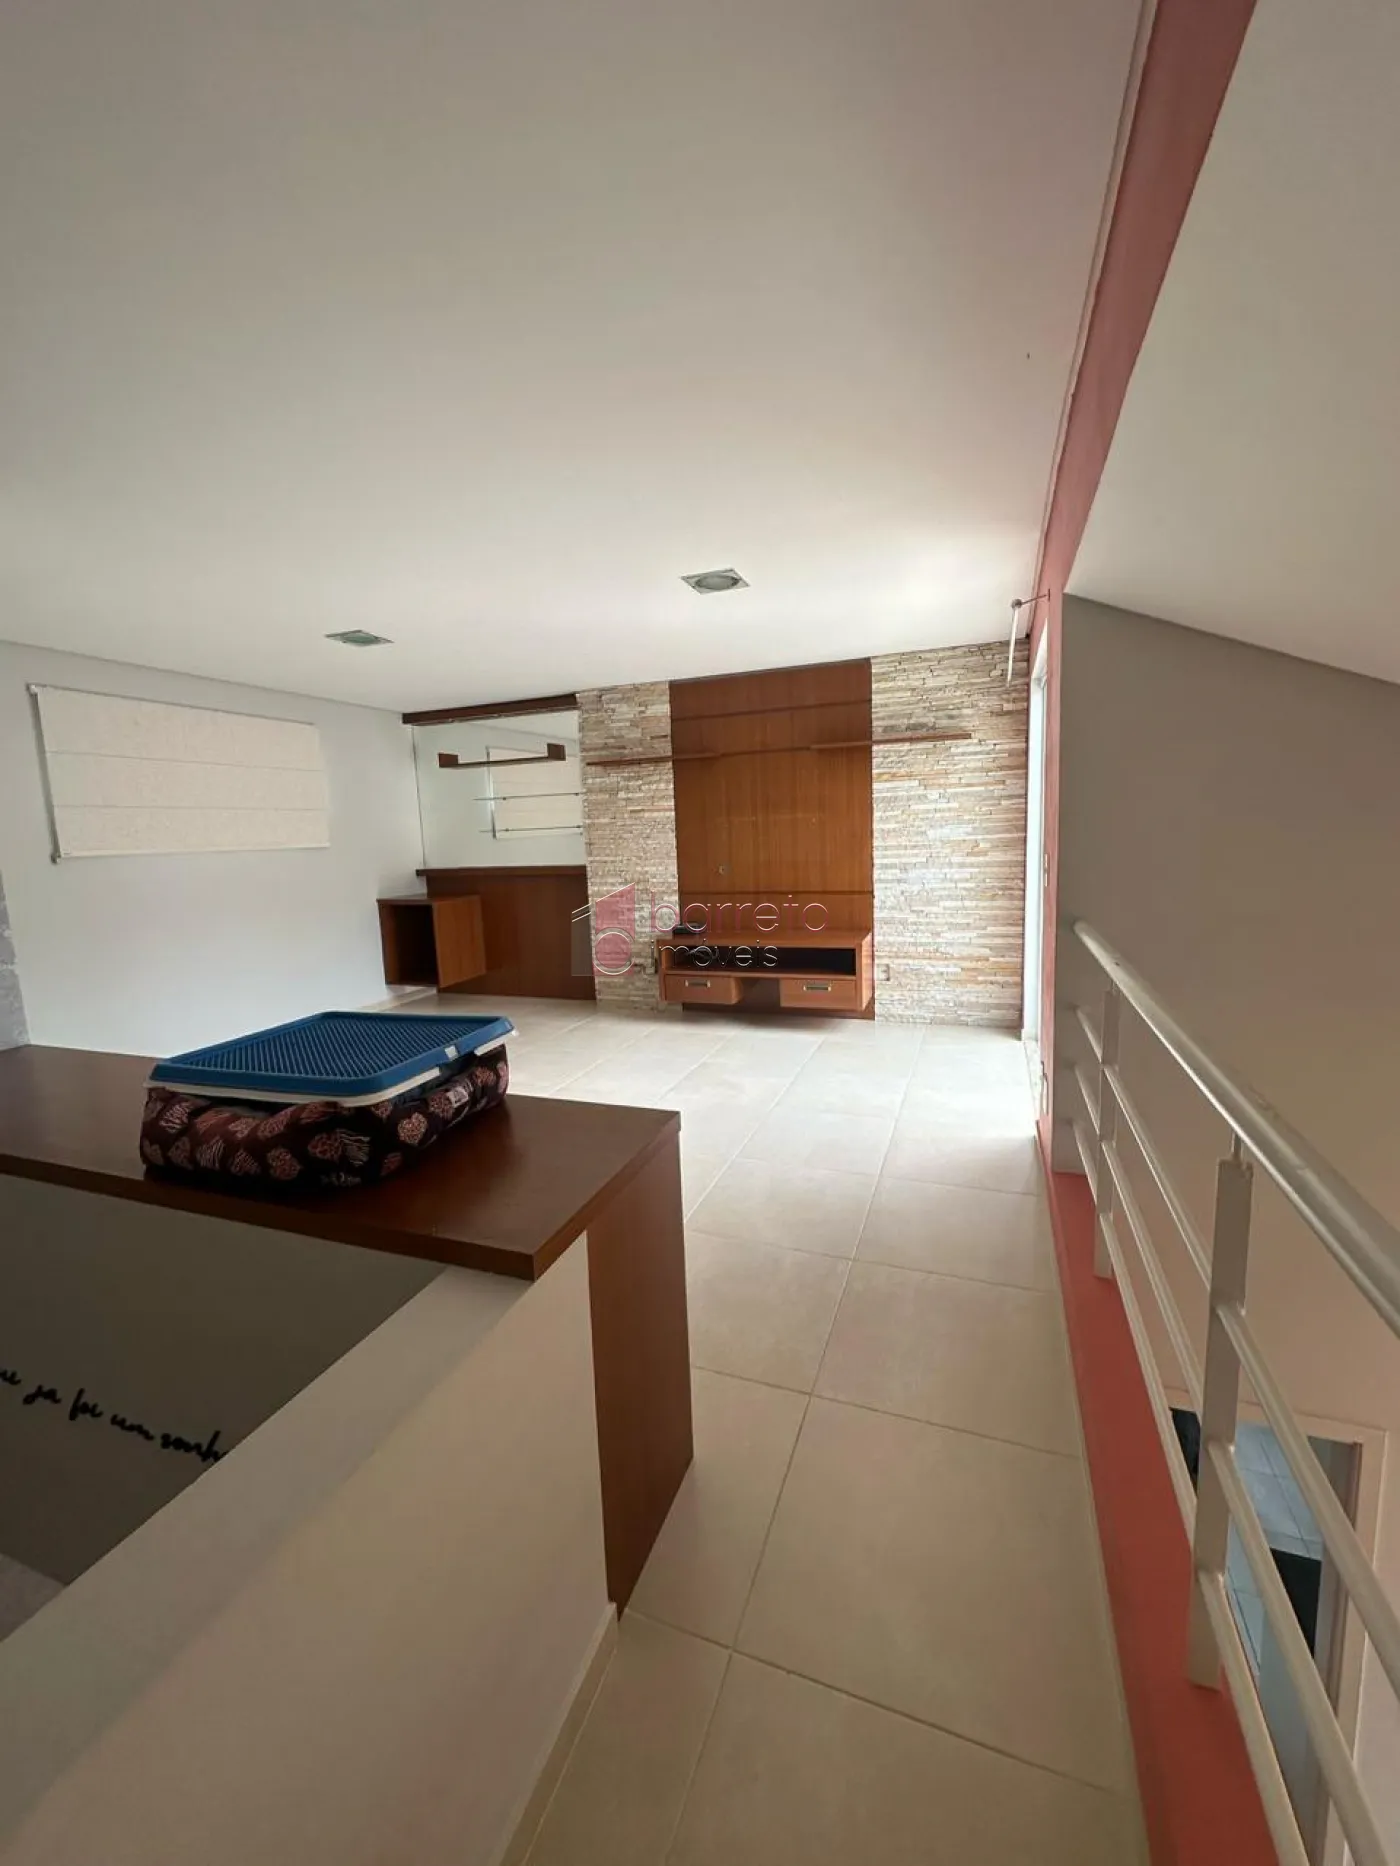 Comprar Casa / Condomínio em Jundiaí R$ 750.000,00 - Foto 7